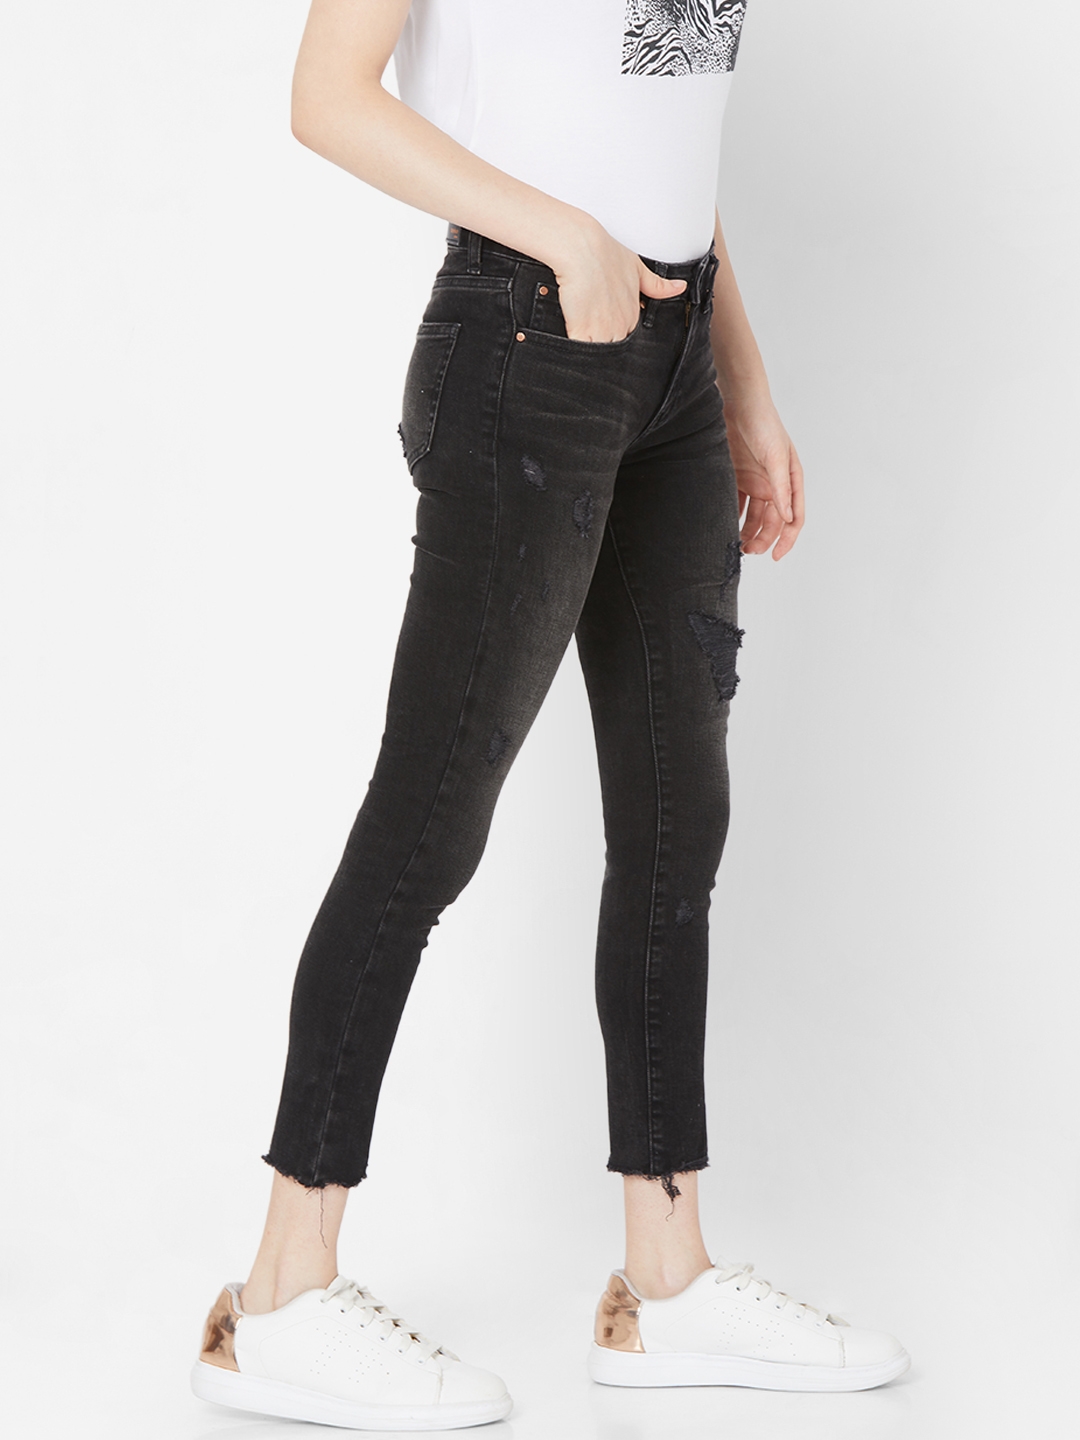 spykar | Women's Black Lycra Solid Ripped Jeans 2